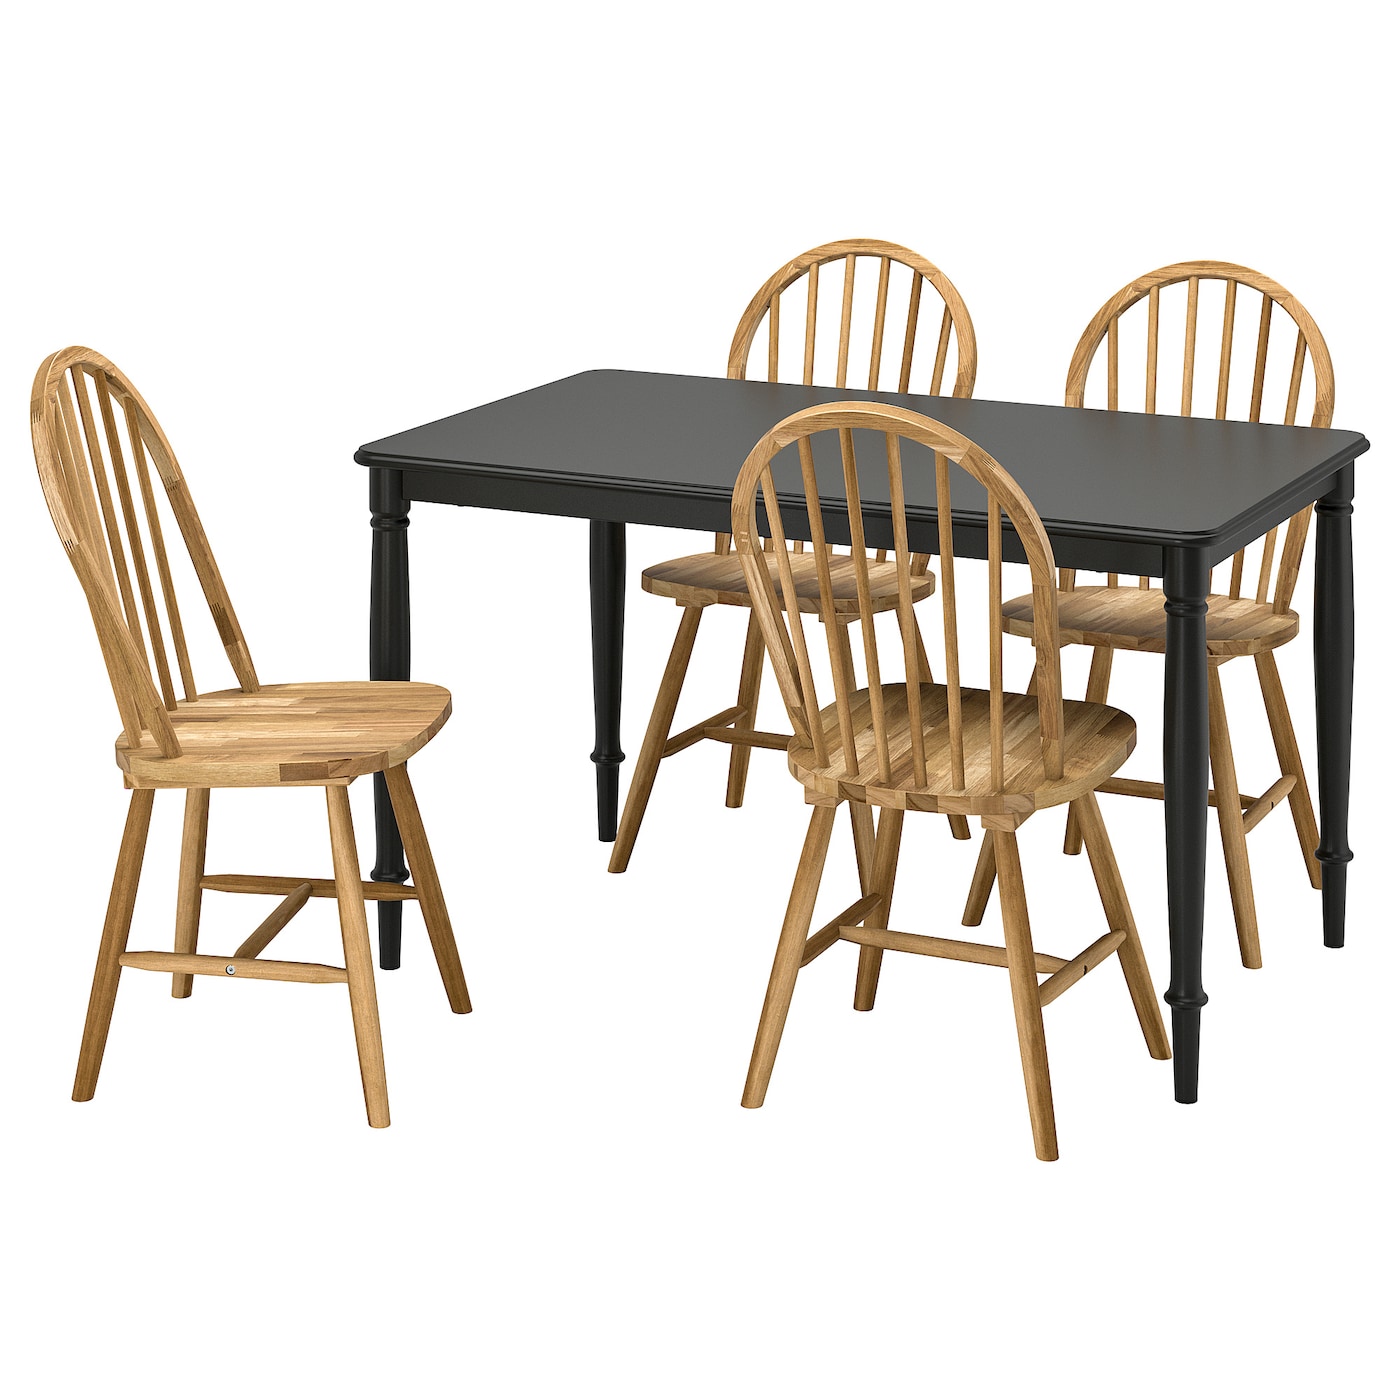 Стол и 4 стула - DANDERYD / SKOGSTA IKEA/ ДАНДЭРЮД / СКОГСТА ИКЕА, 130х75/94х43 см,  черный/коричневый